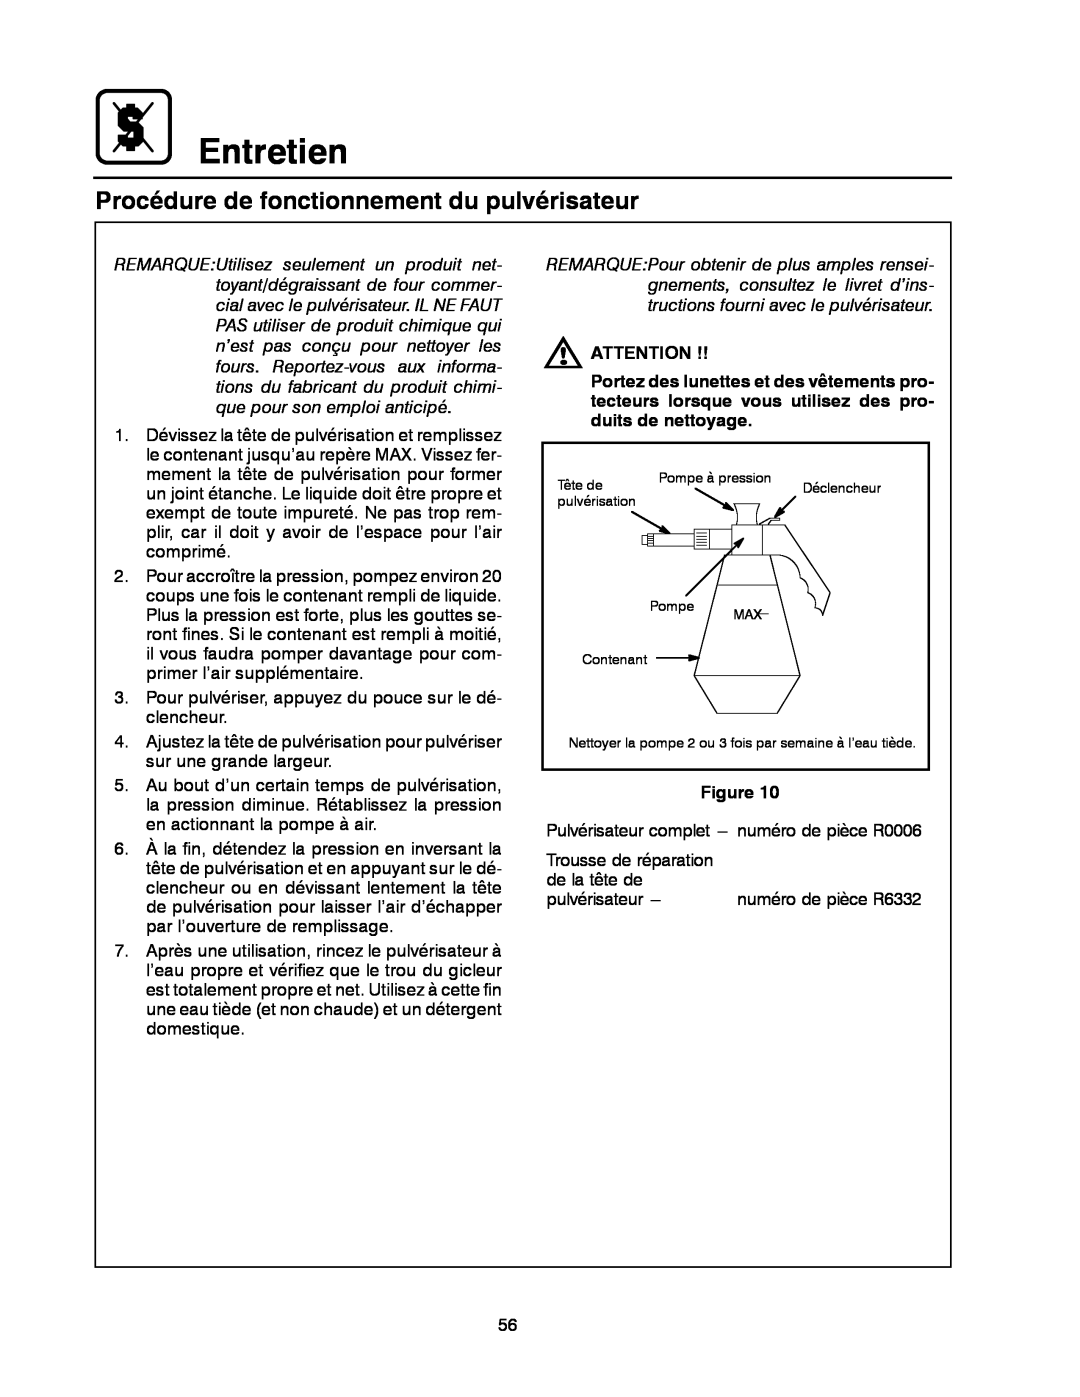 Blodgett BC-20G manual Entretien, Procédure de fonctionnement du pulvérisateur 